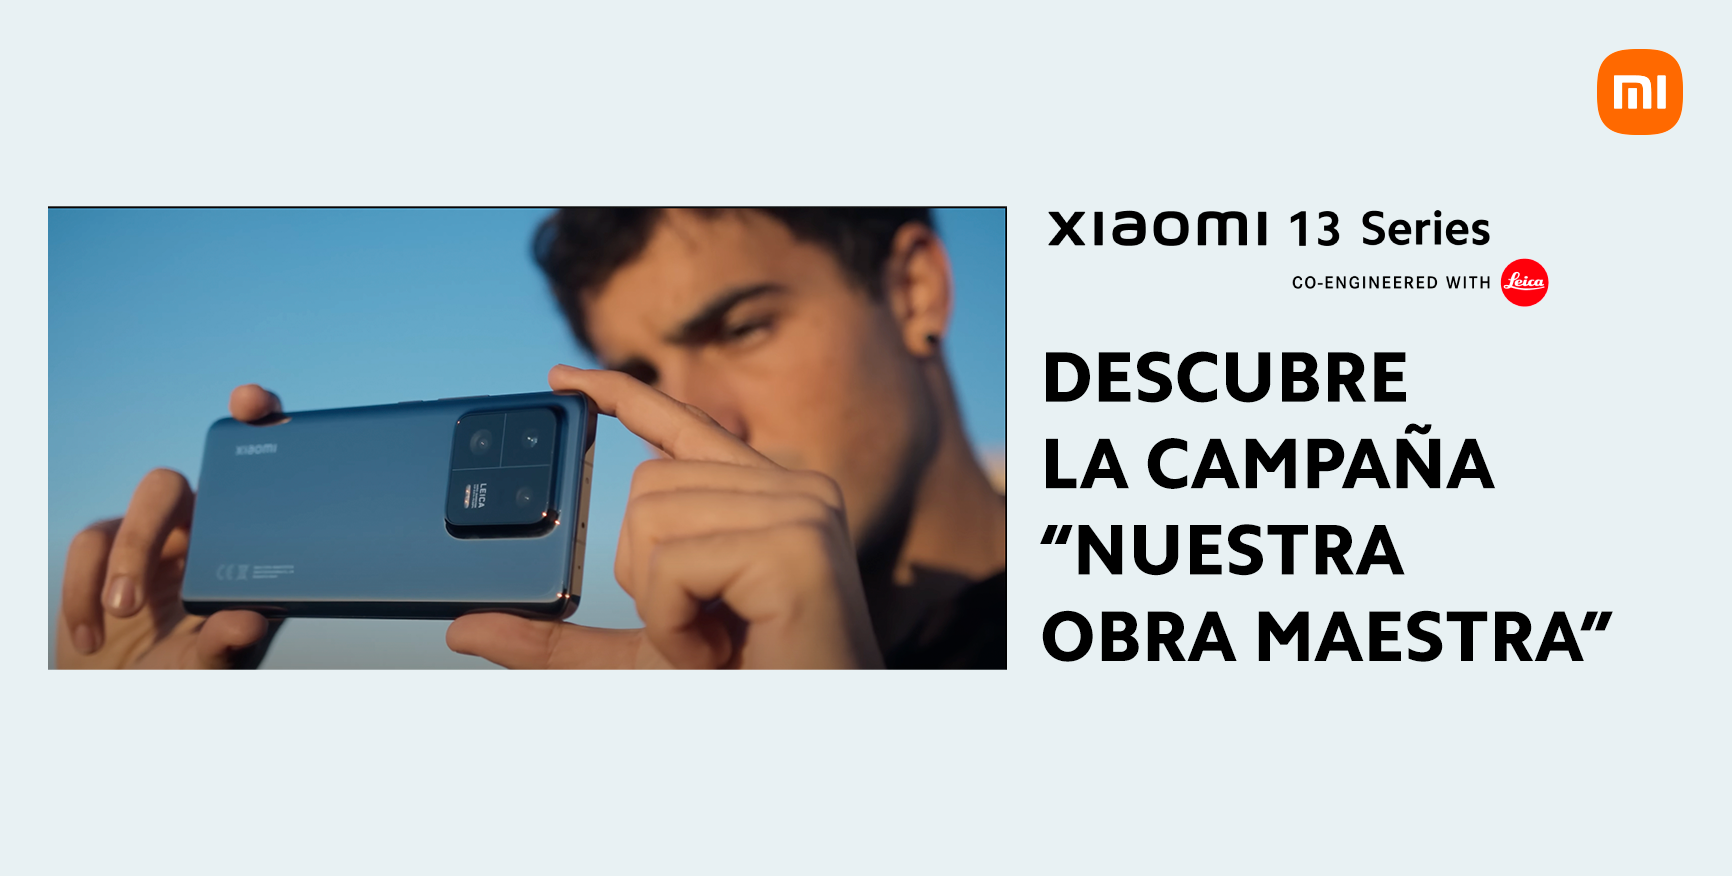 Xiaomi 13 Series - Nuestra obra maestra. Descubre la campaña con Óscar  Casas, Alex Rivera y los artesanos de la Milla de Oro de Valladolid